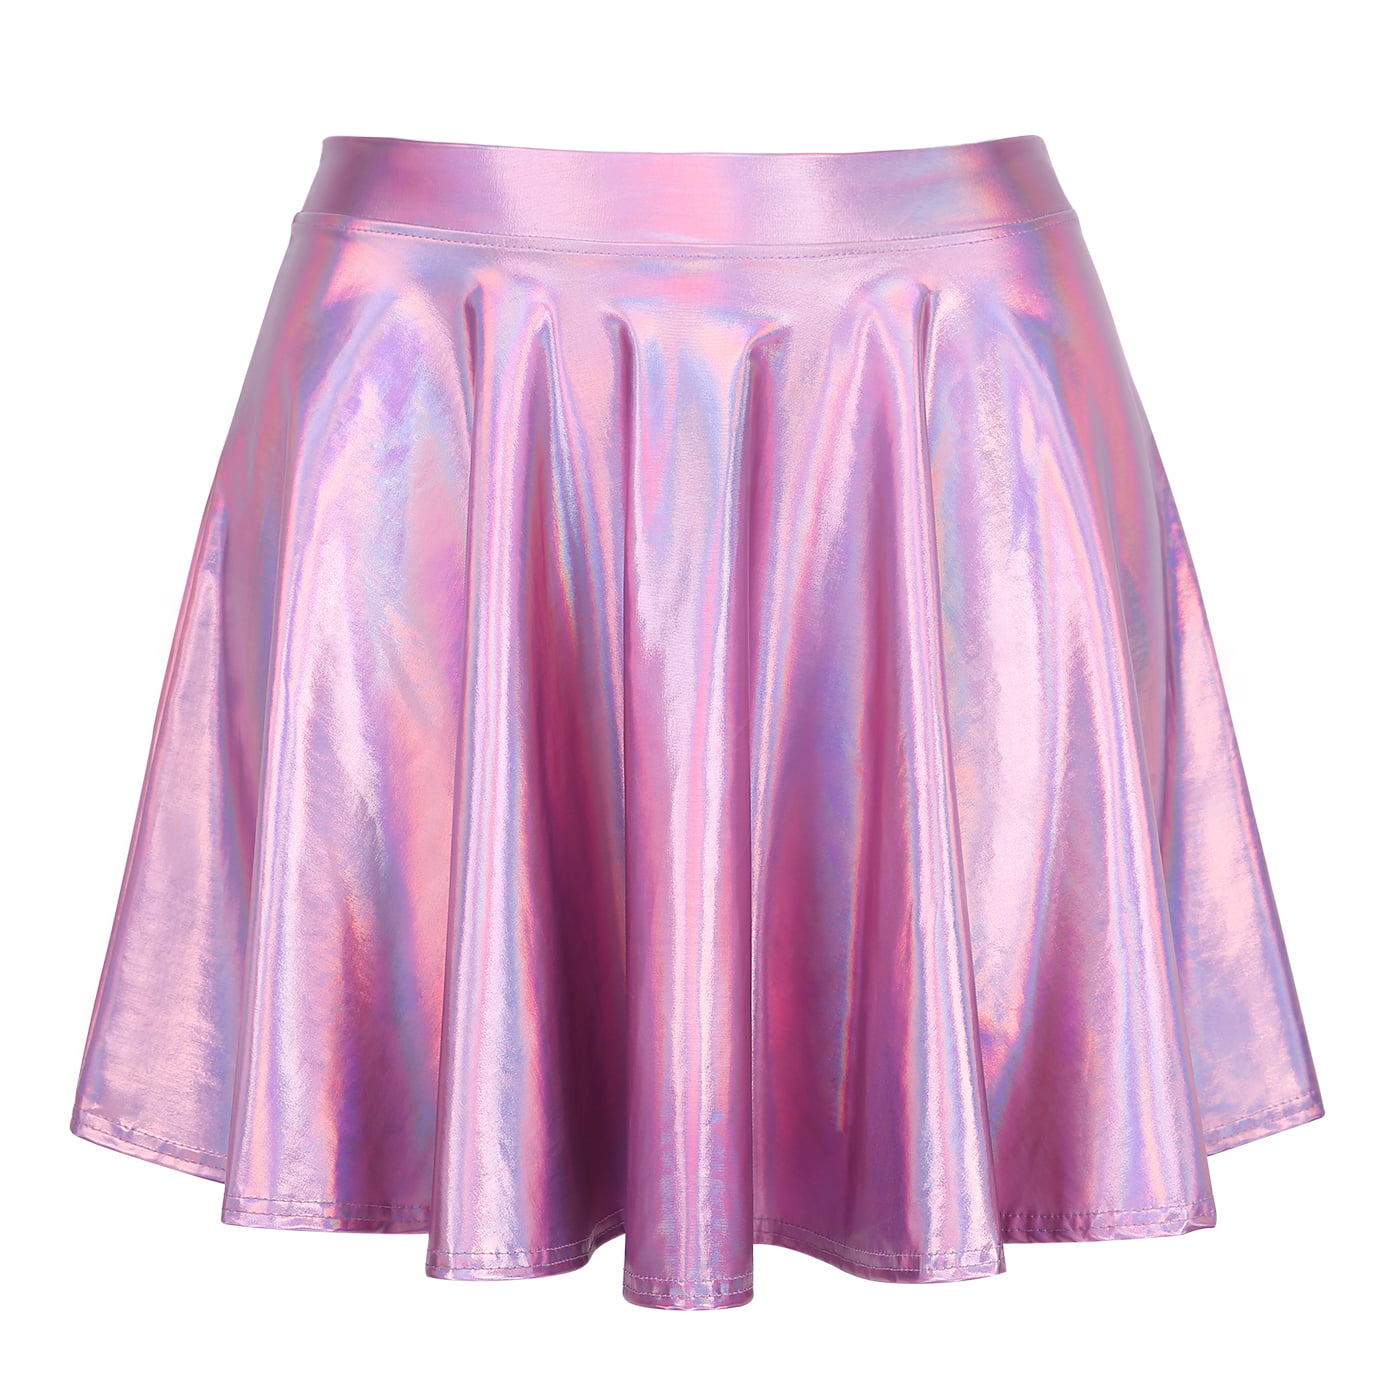 FANTASY SPACE Plain Pleated Skater Skirt for Women Versatile Stretchy Flared Mini Skirt 